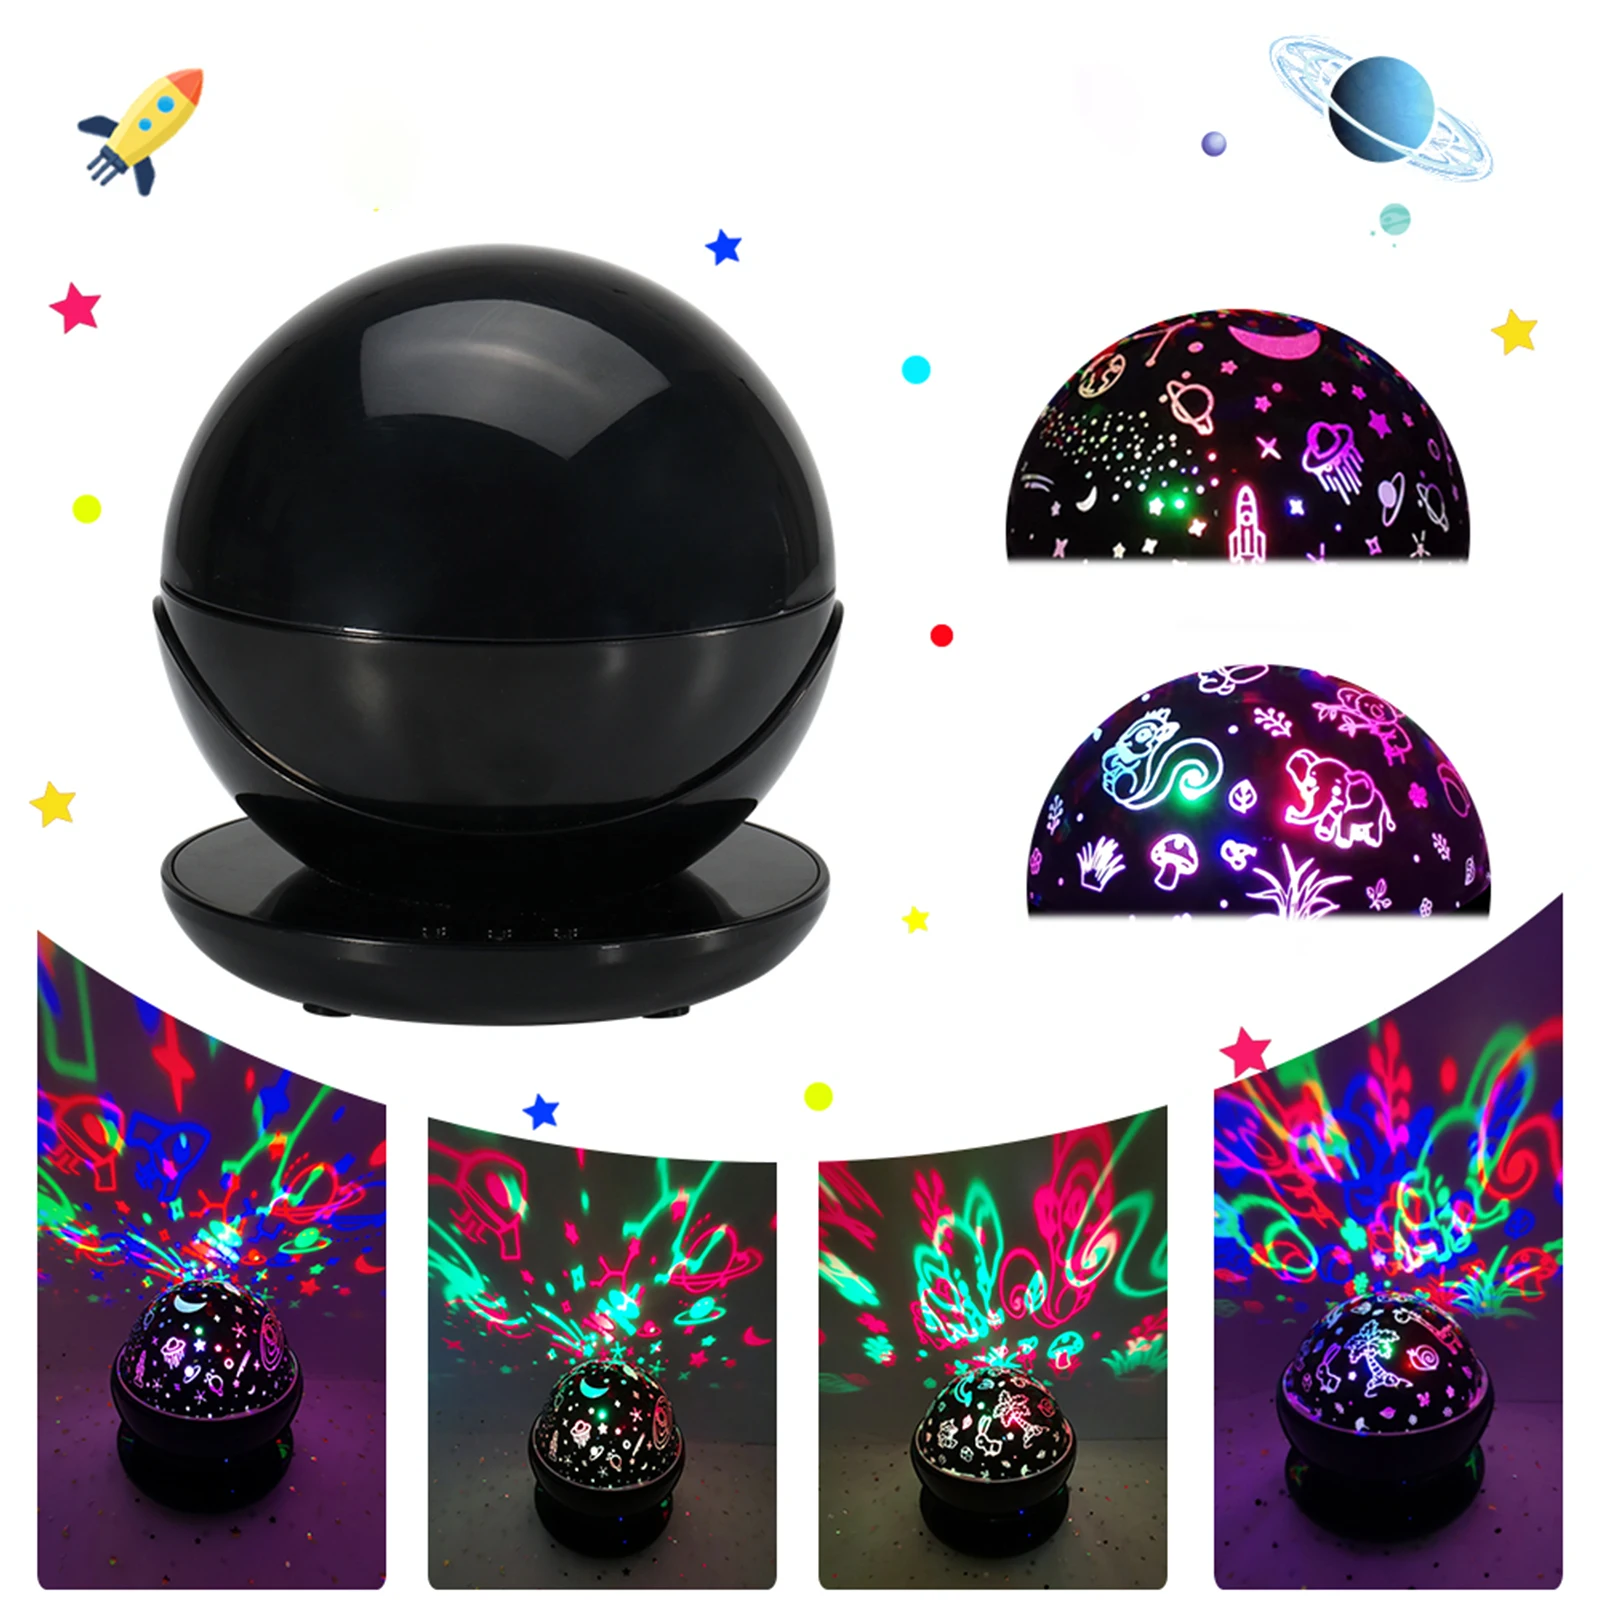 

Светодиодный проектор с волшебными шарами светильник, вращающийся ночсветильник с узорами в виде животных и звезд, сценический эффект, USB, о...